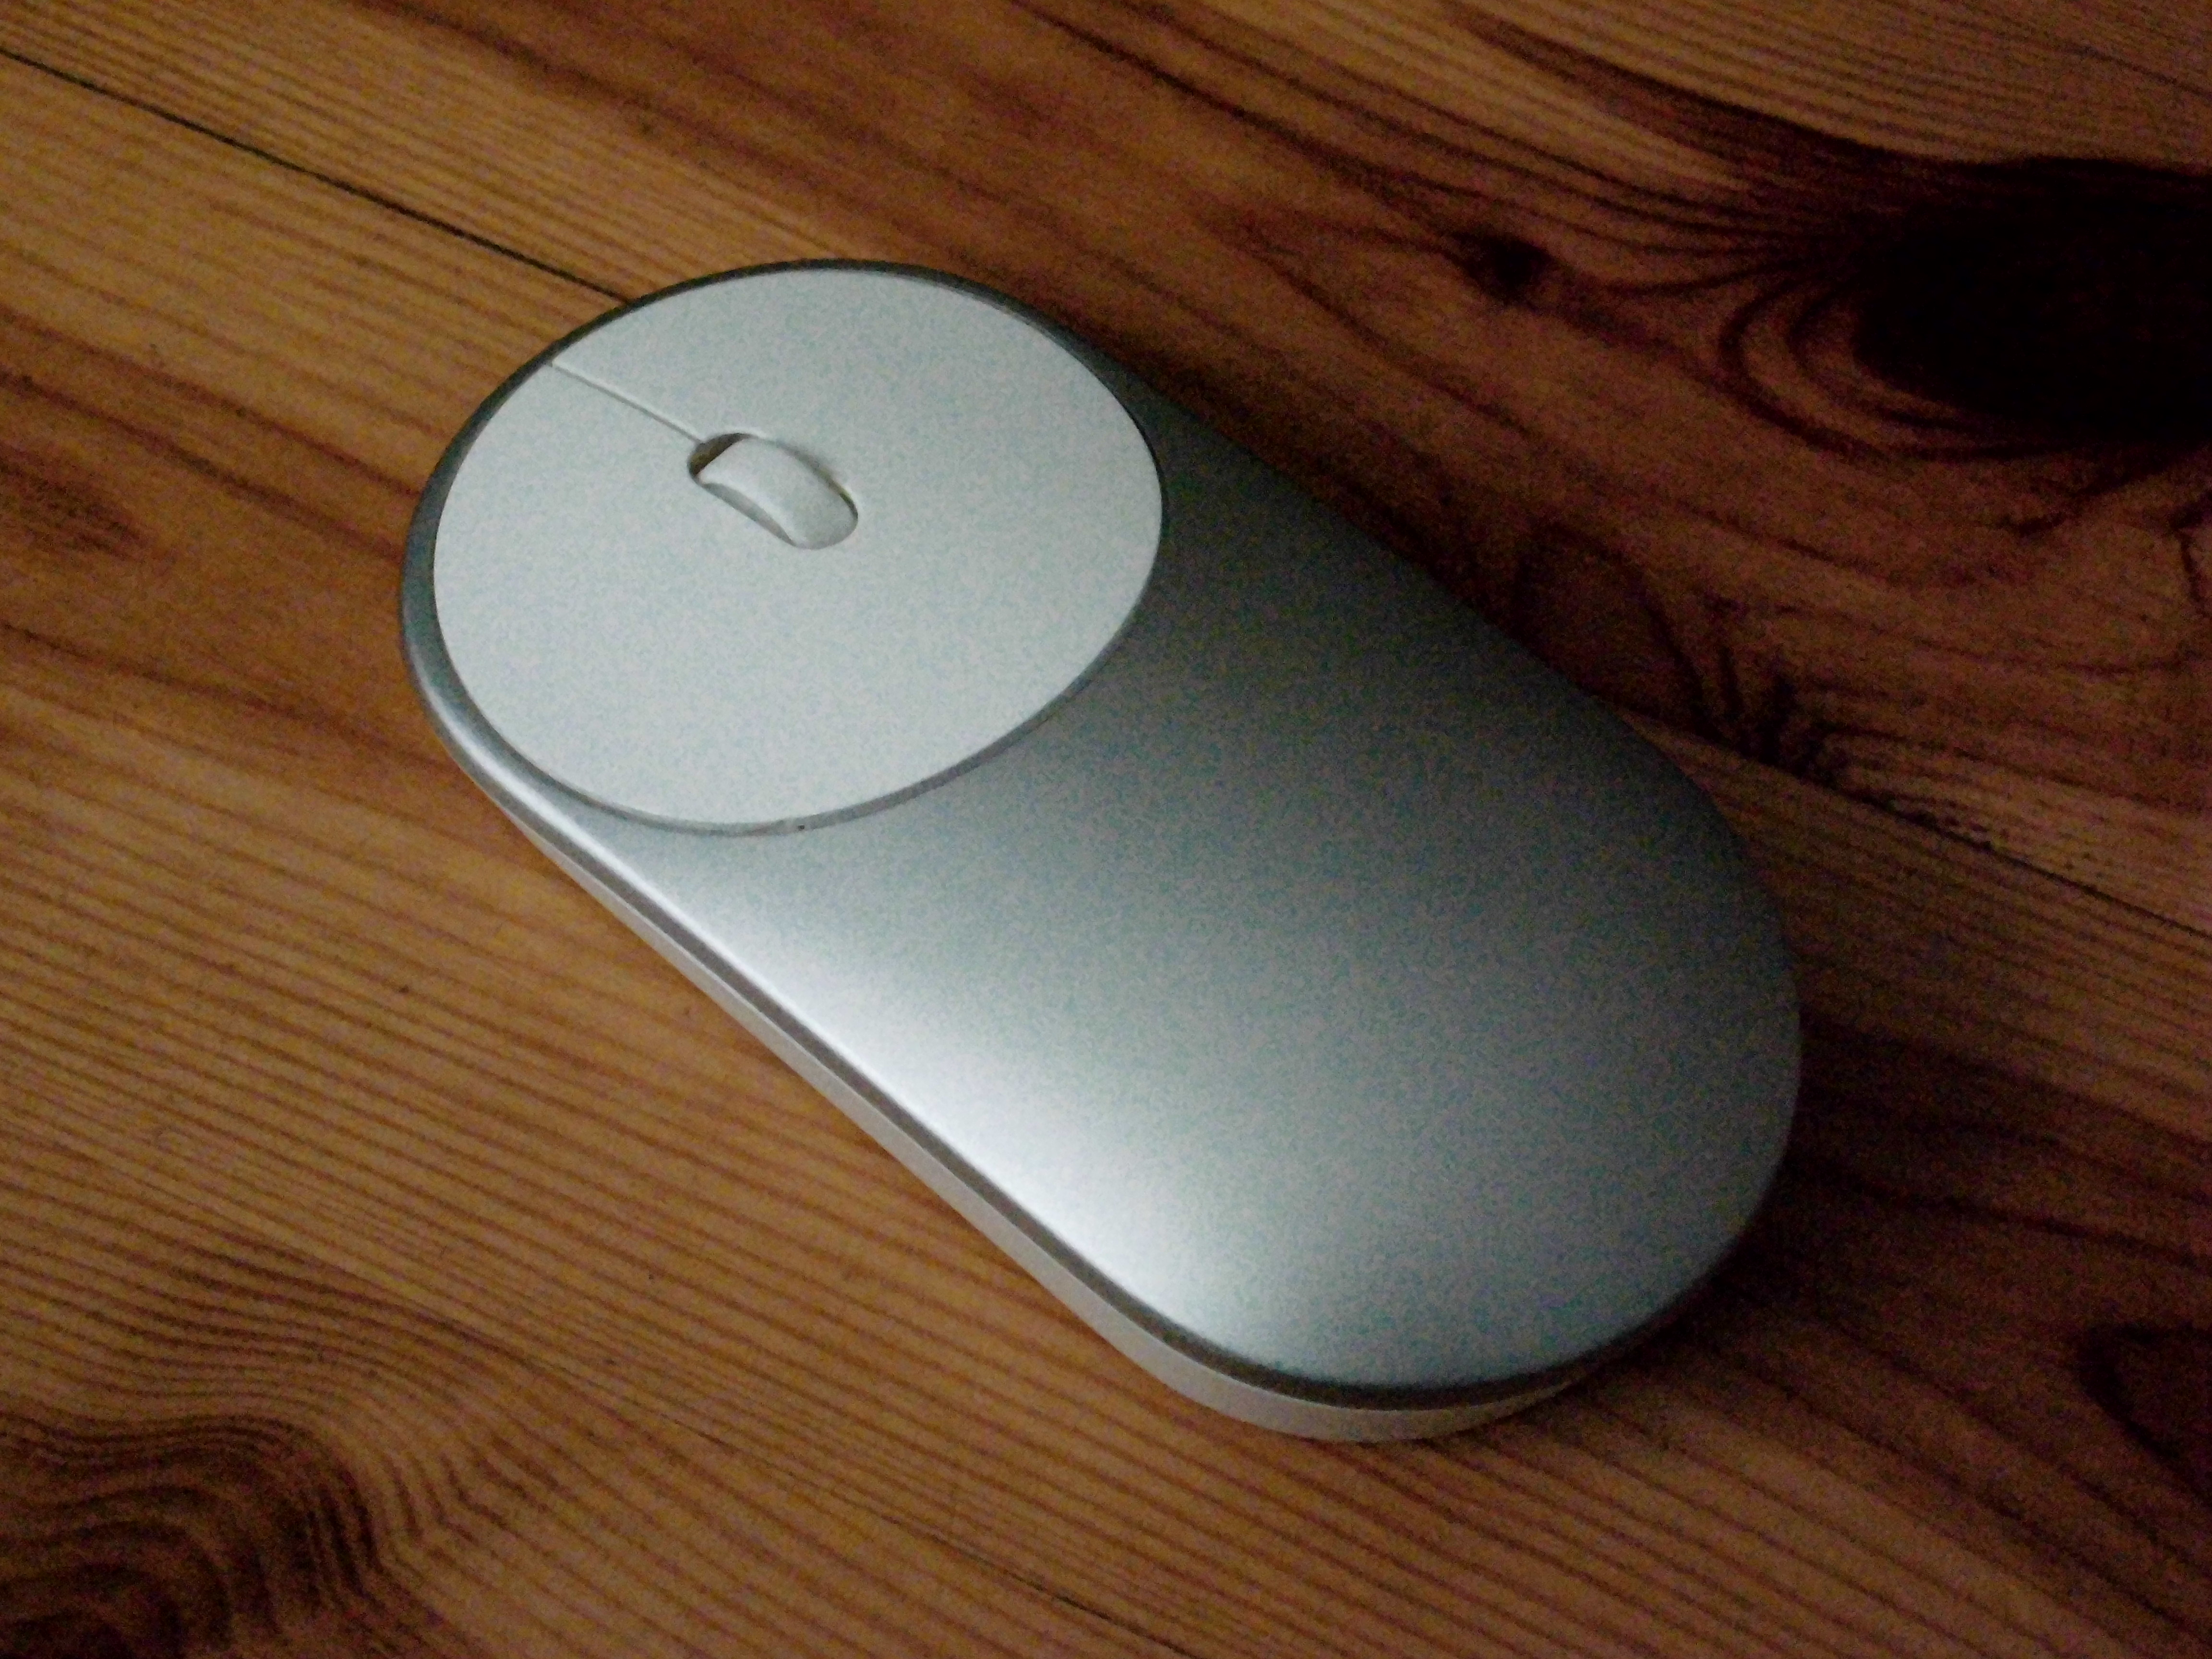 Xiaomi Mi Mouse - Mega recenzja bezprzewodowej myszki komputerowej :: KupPanGadżet.pl